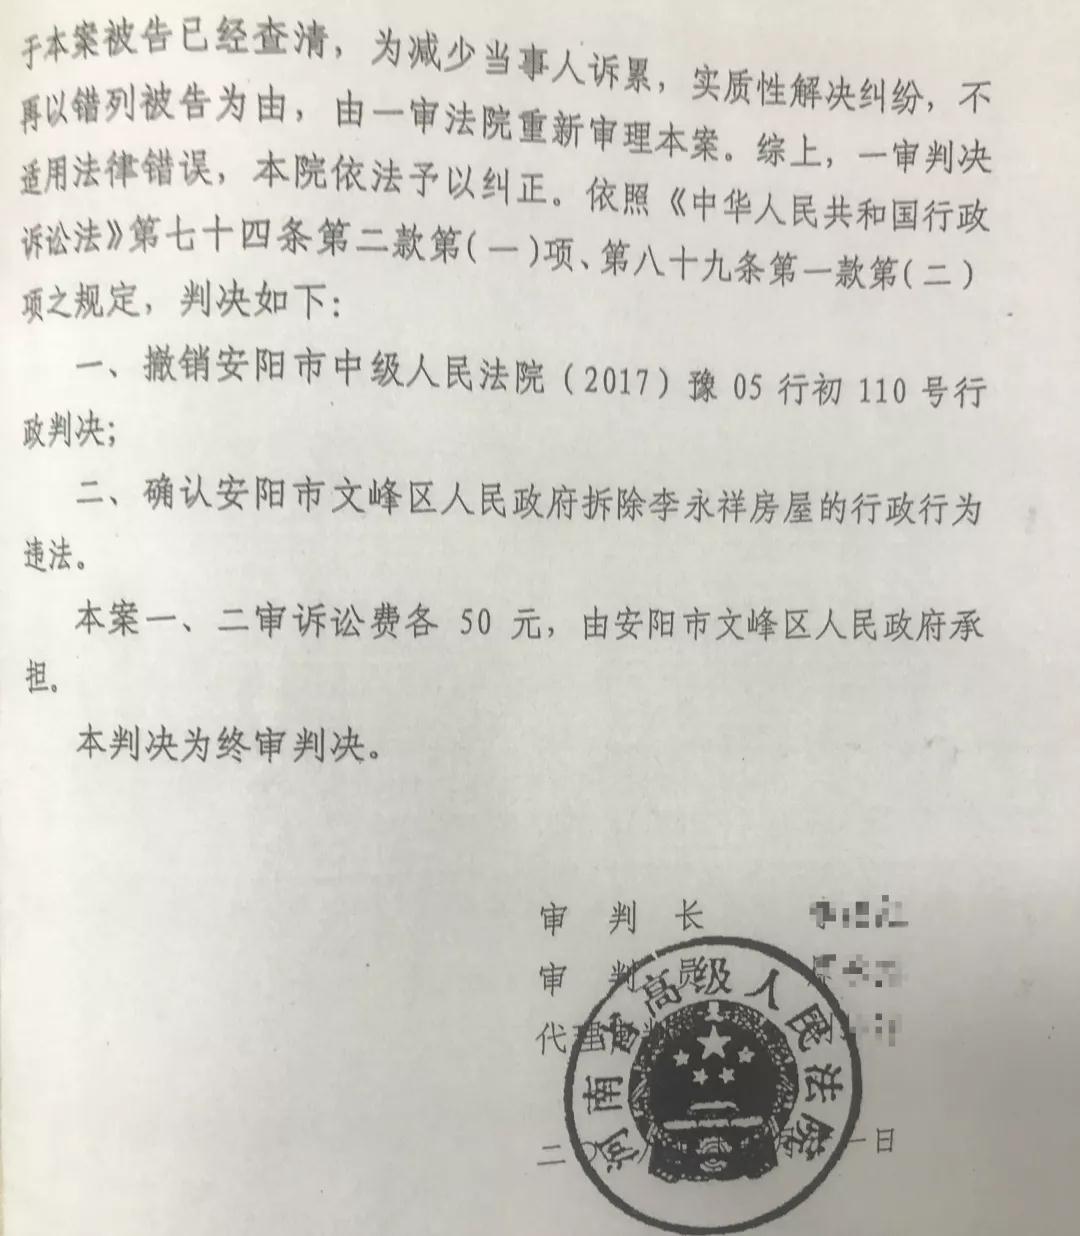 法院确认文峰区政府强拆违法判决书